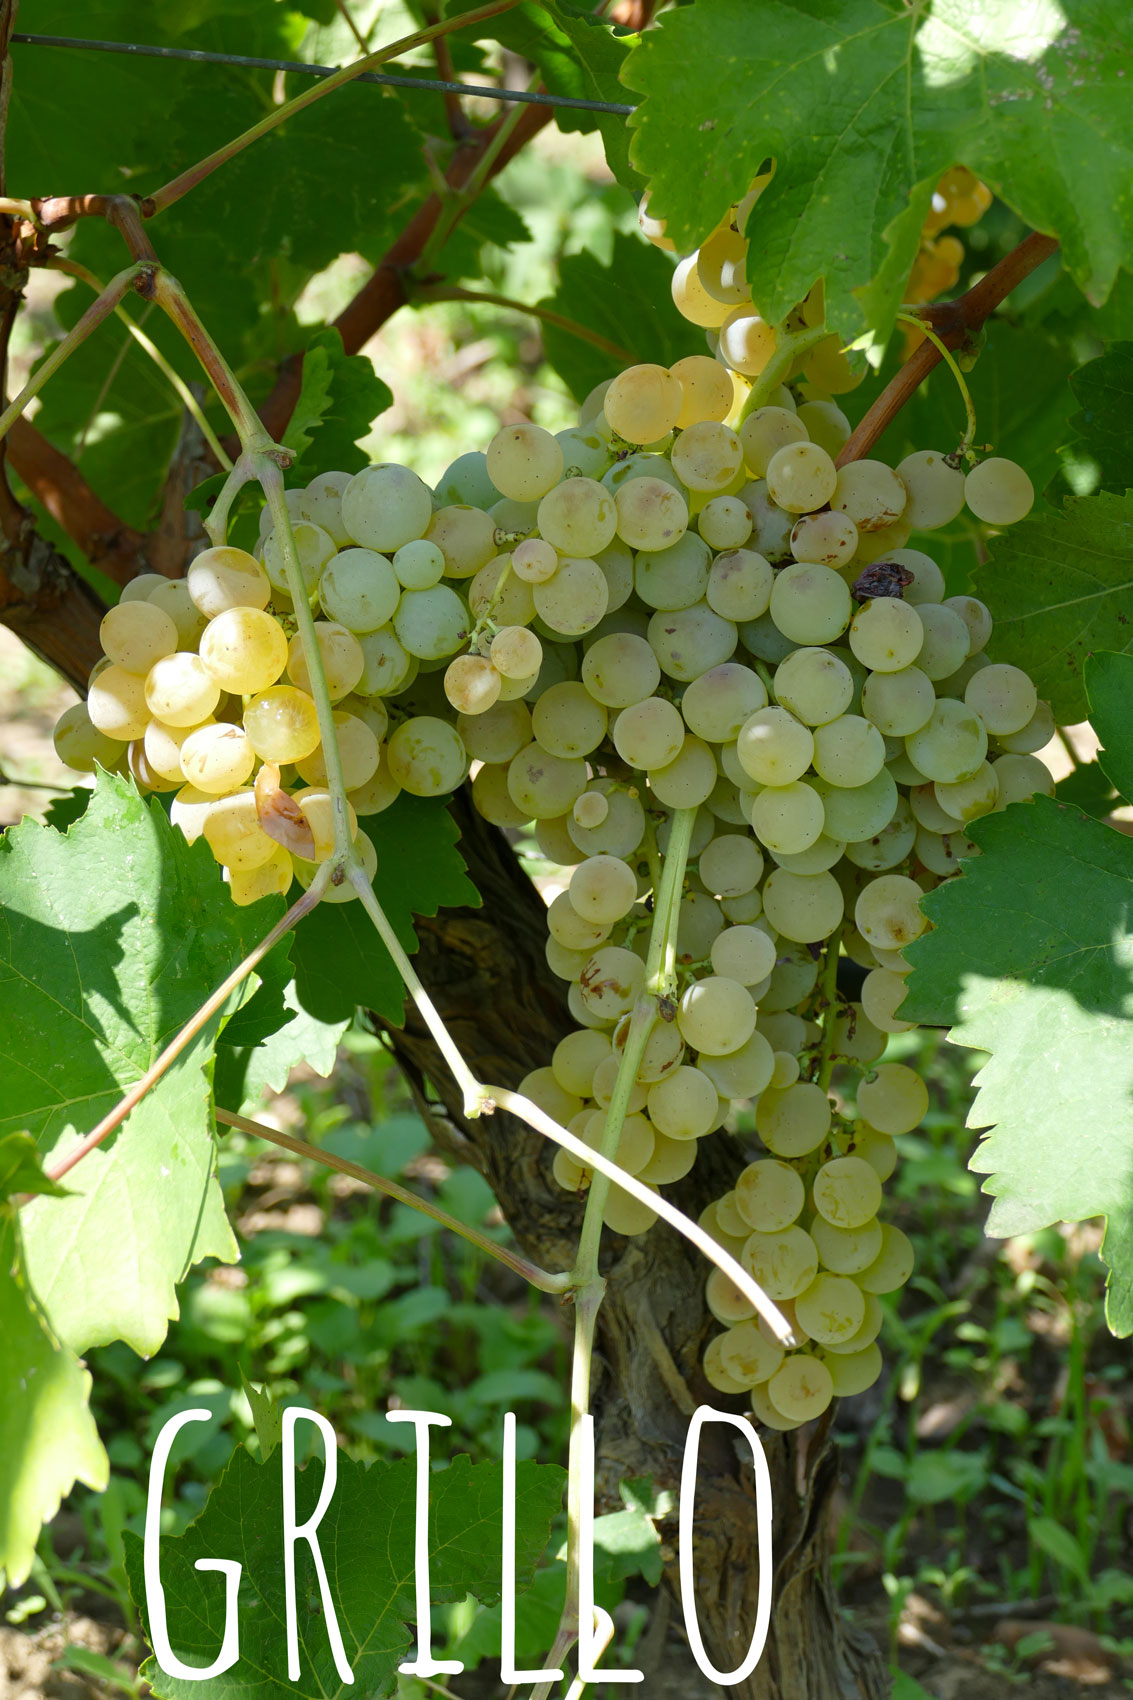 Grillo grapes orange wines, natural wine elios sicily